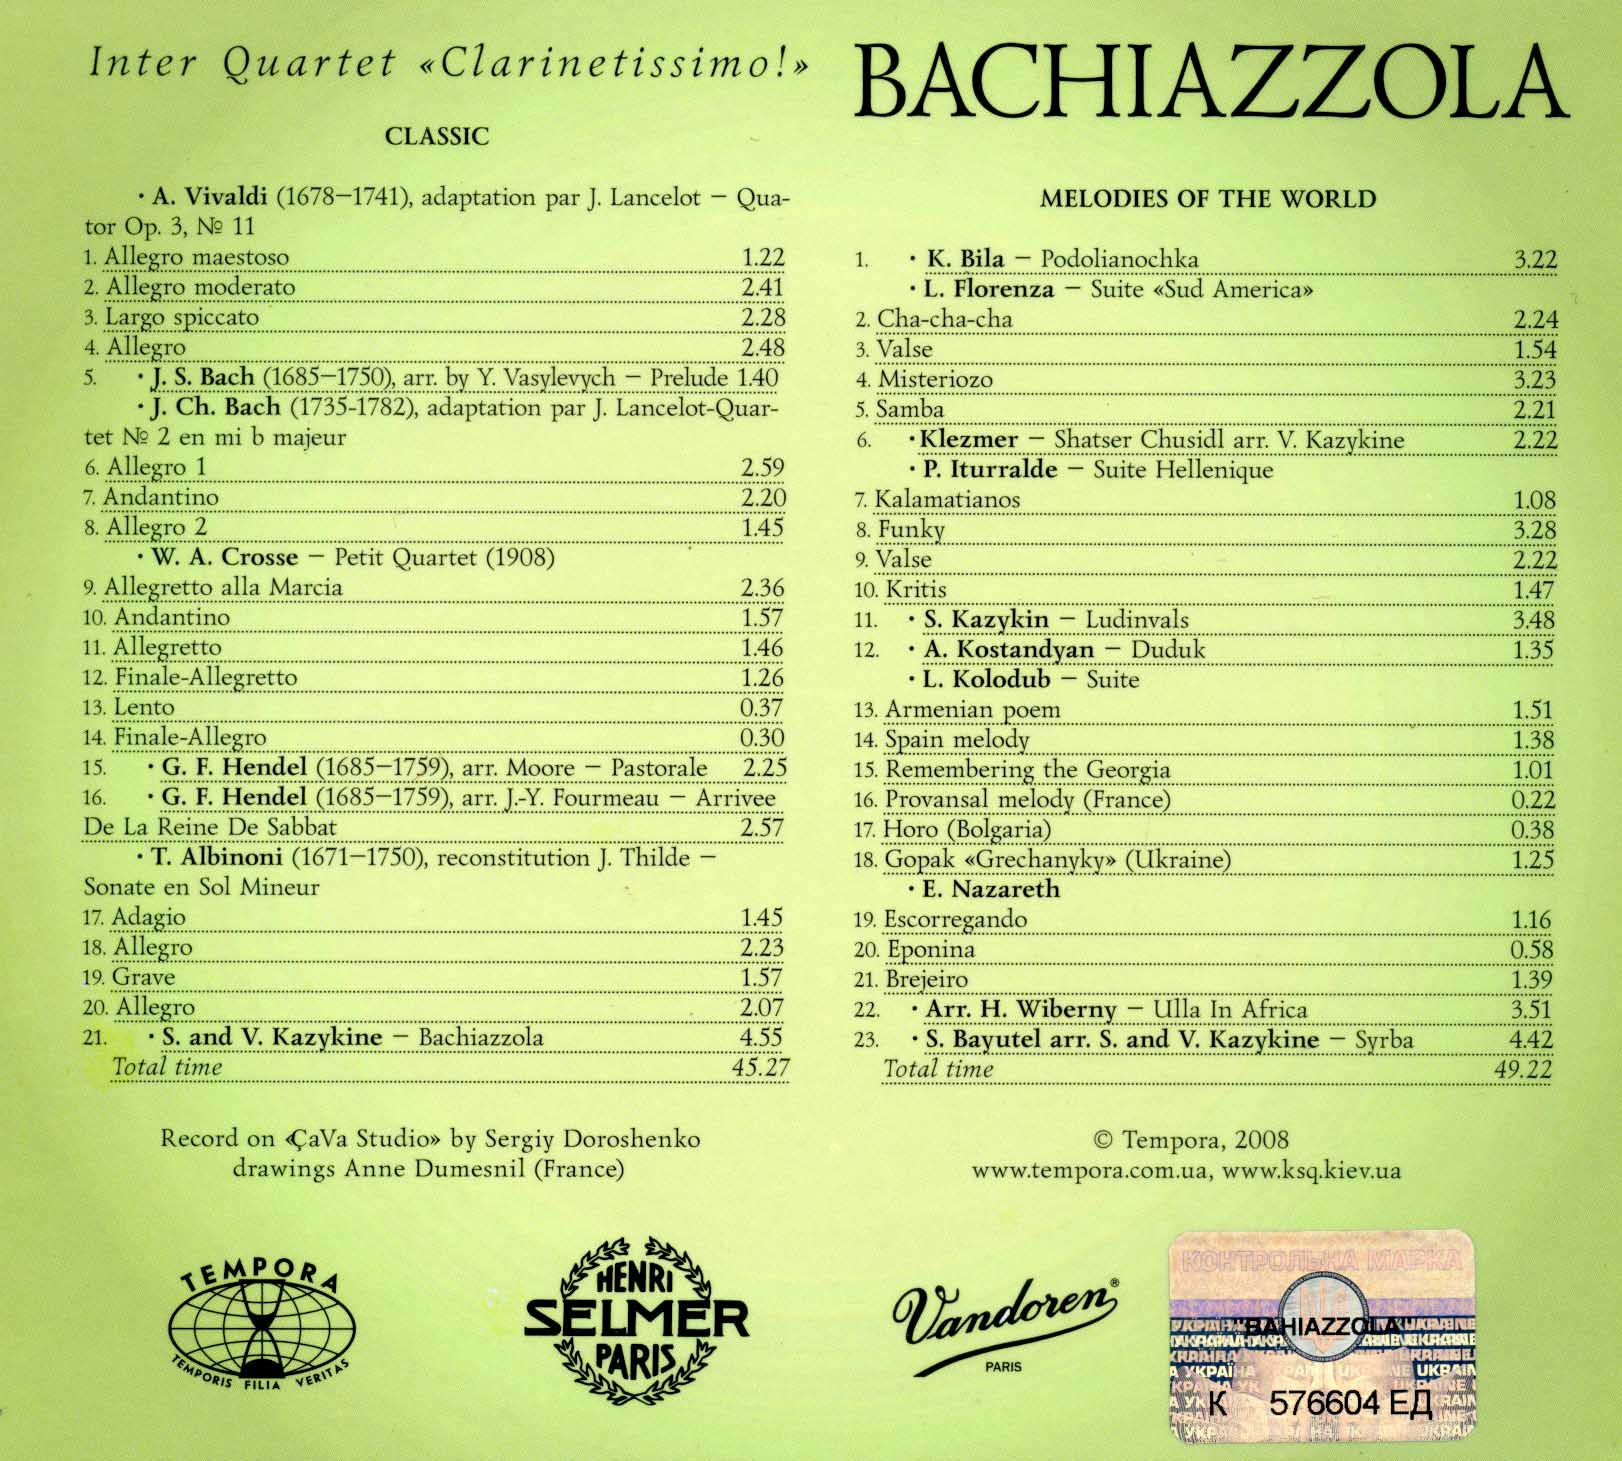 Le double album Bachiazzola - Quatuor de Clarinettes : Hedwig Swimberghe - clarinette (Belgique) Slava Kazykin - clarinette (France ) Dmytro Vasilev - clarinette (Suisse ) Yuri Vasylevych - clarinette, clarinette basse  (Ukraine)  